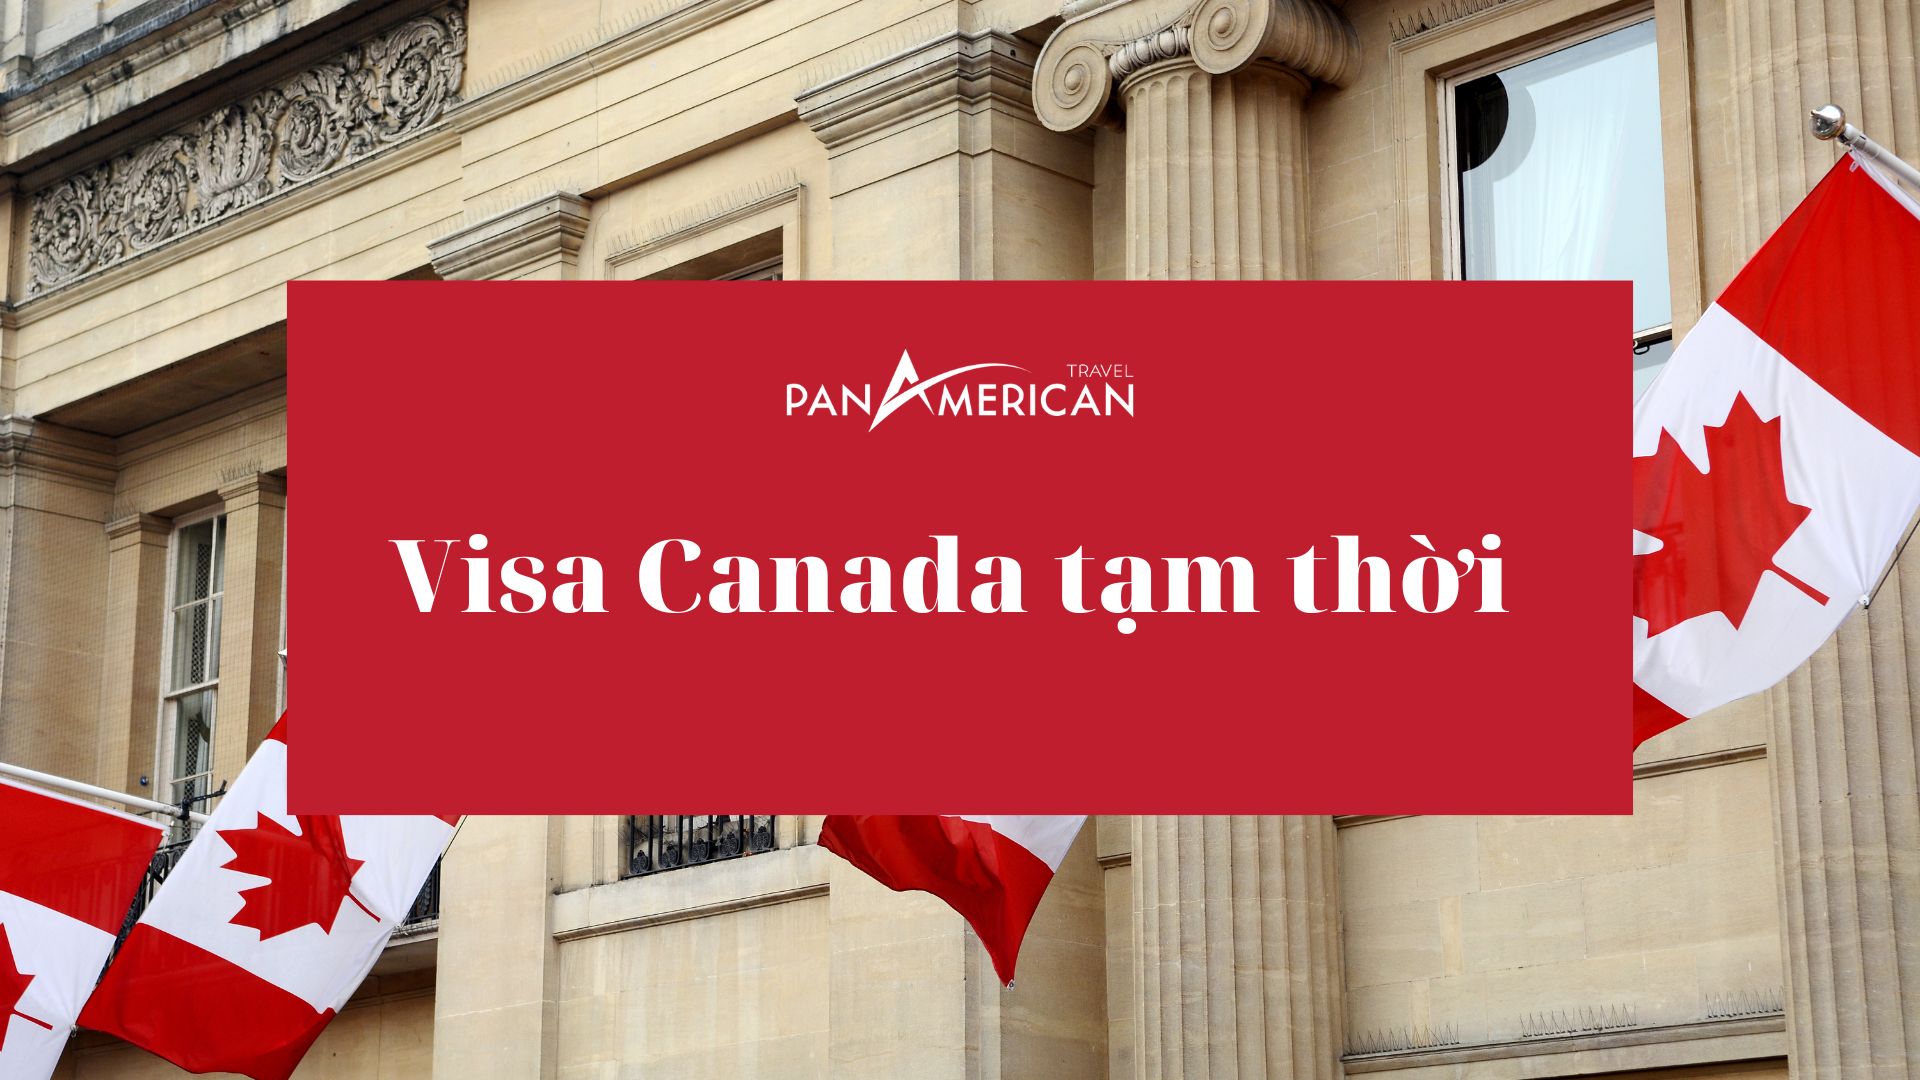 Visa Canada tạm thời